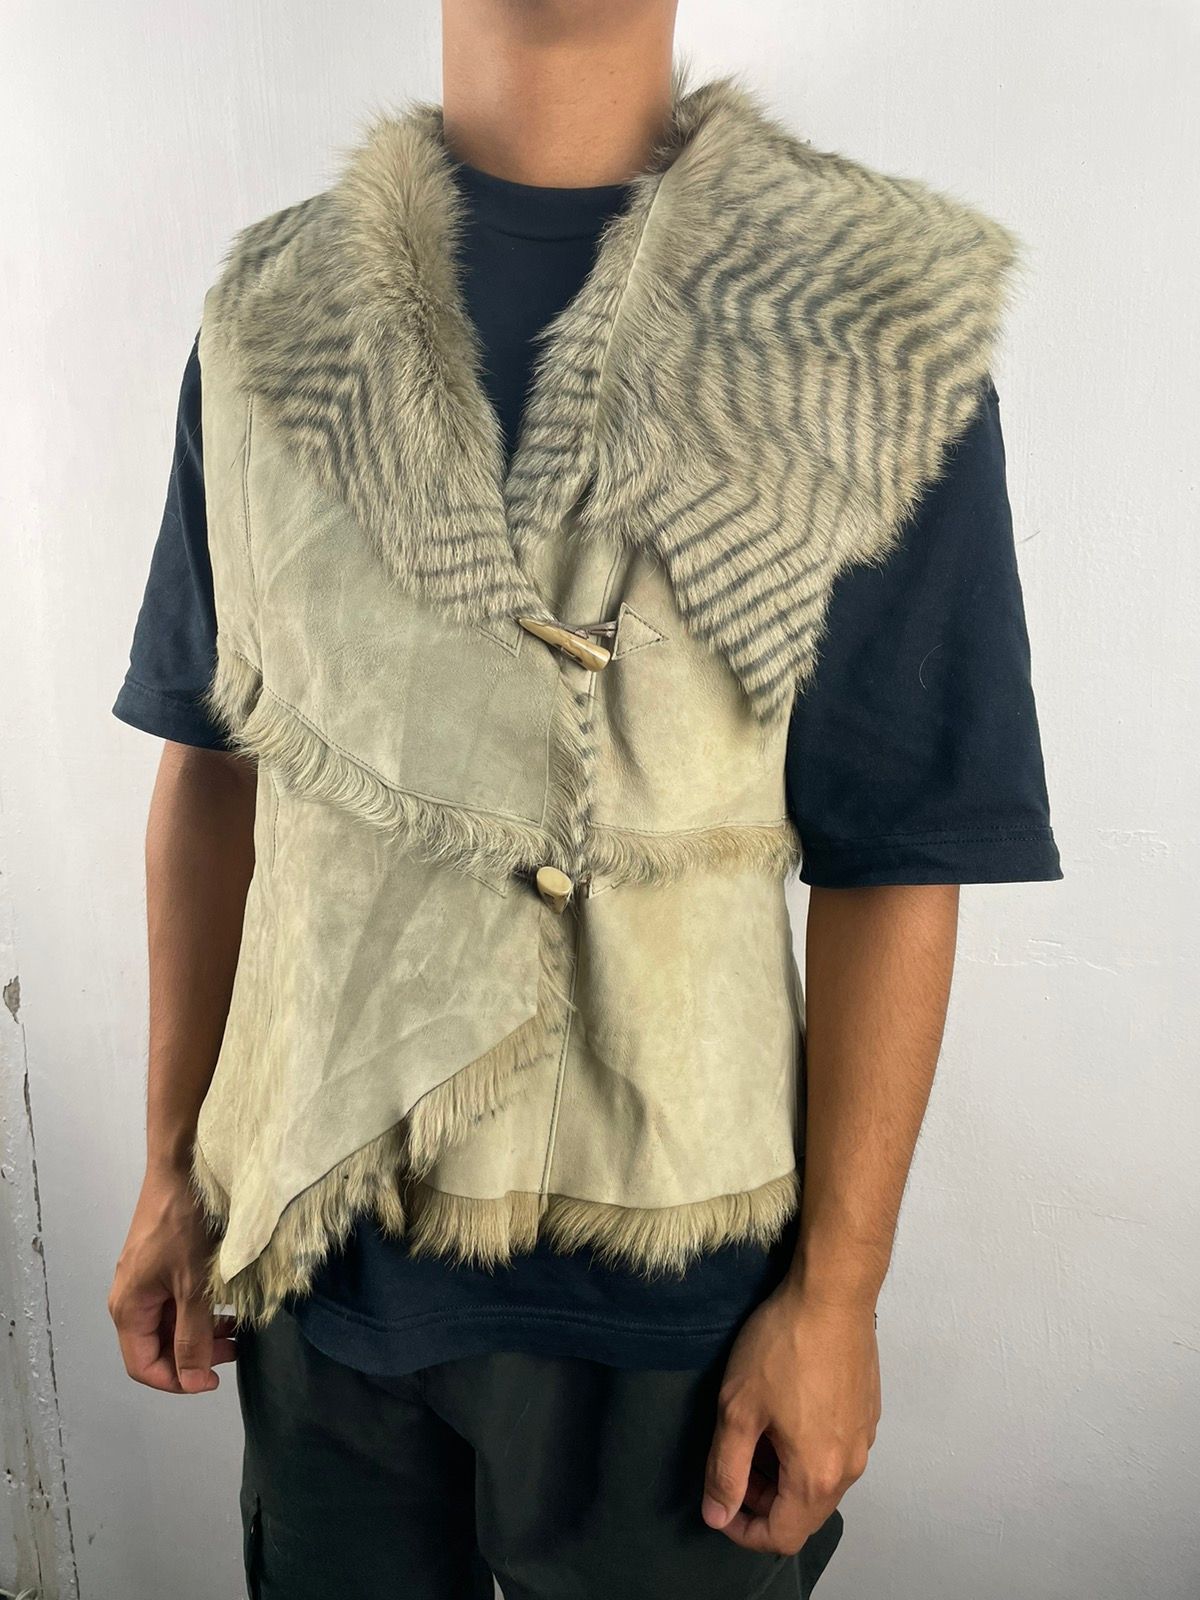 Japanese Brand Vintage Fur Goat Sheepskin Patchwork Vest Jacket Size US M / EU 48-50 / 2 - 1 Preview